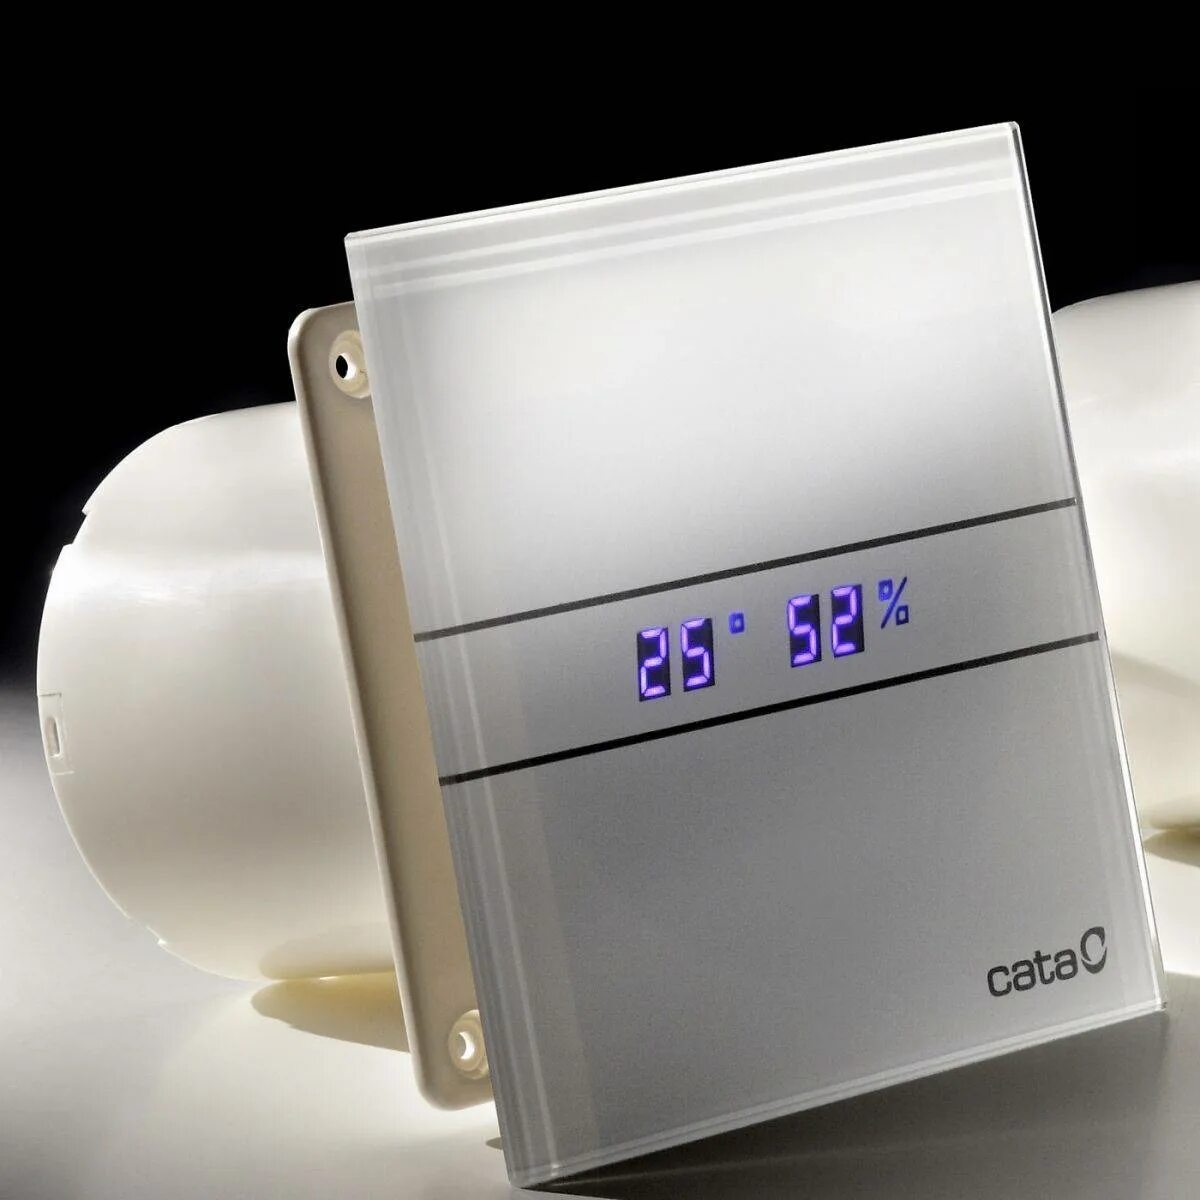 Вентилятор Cata e100. Cata e-100 GTH. Вентилятор вытяжной для ванной Cata. Вентилятор вытяжной 100 для ванной с датчиком влажности.